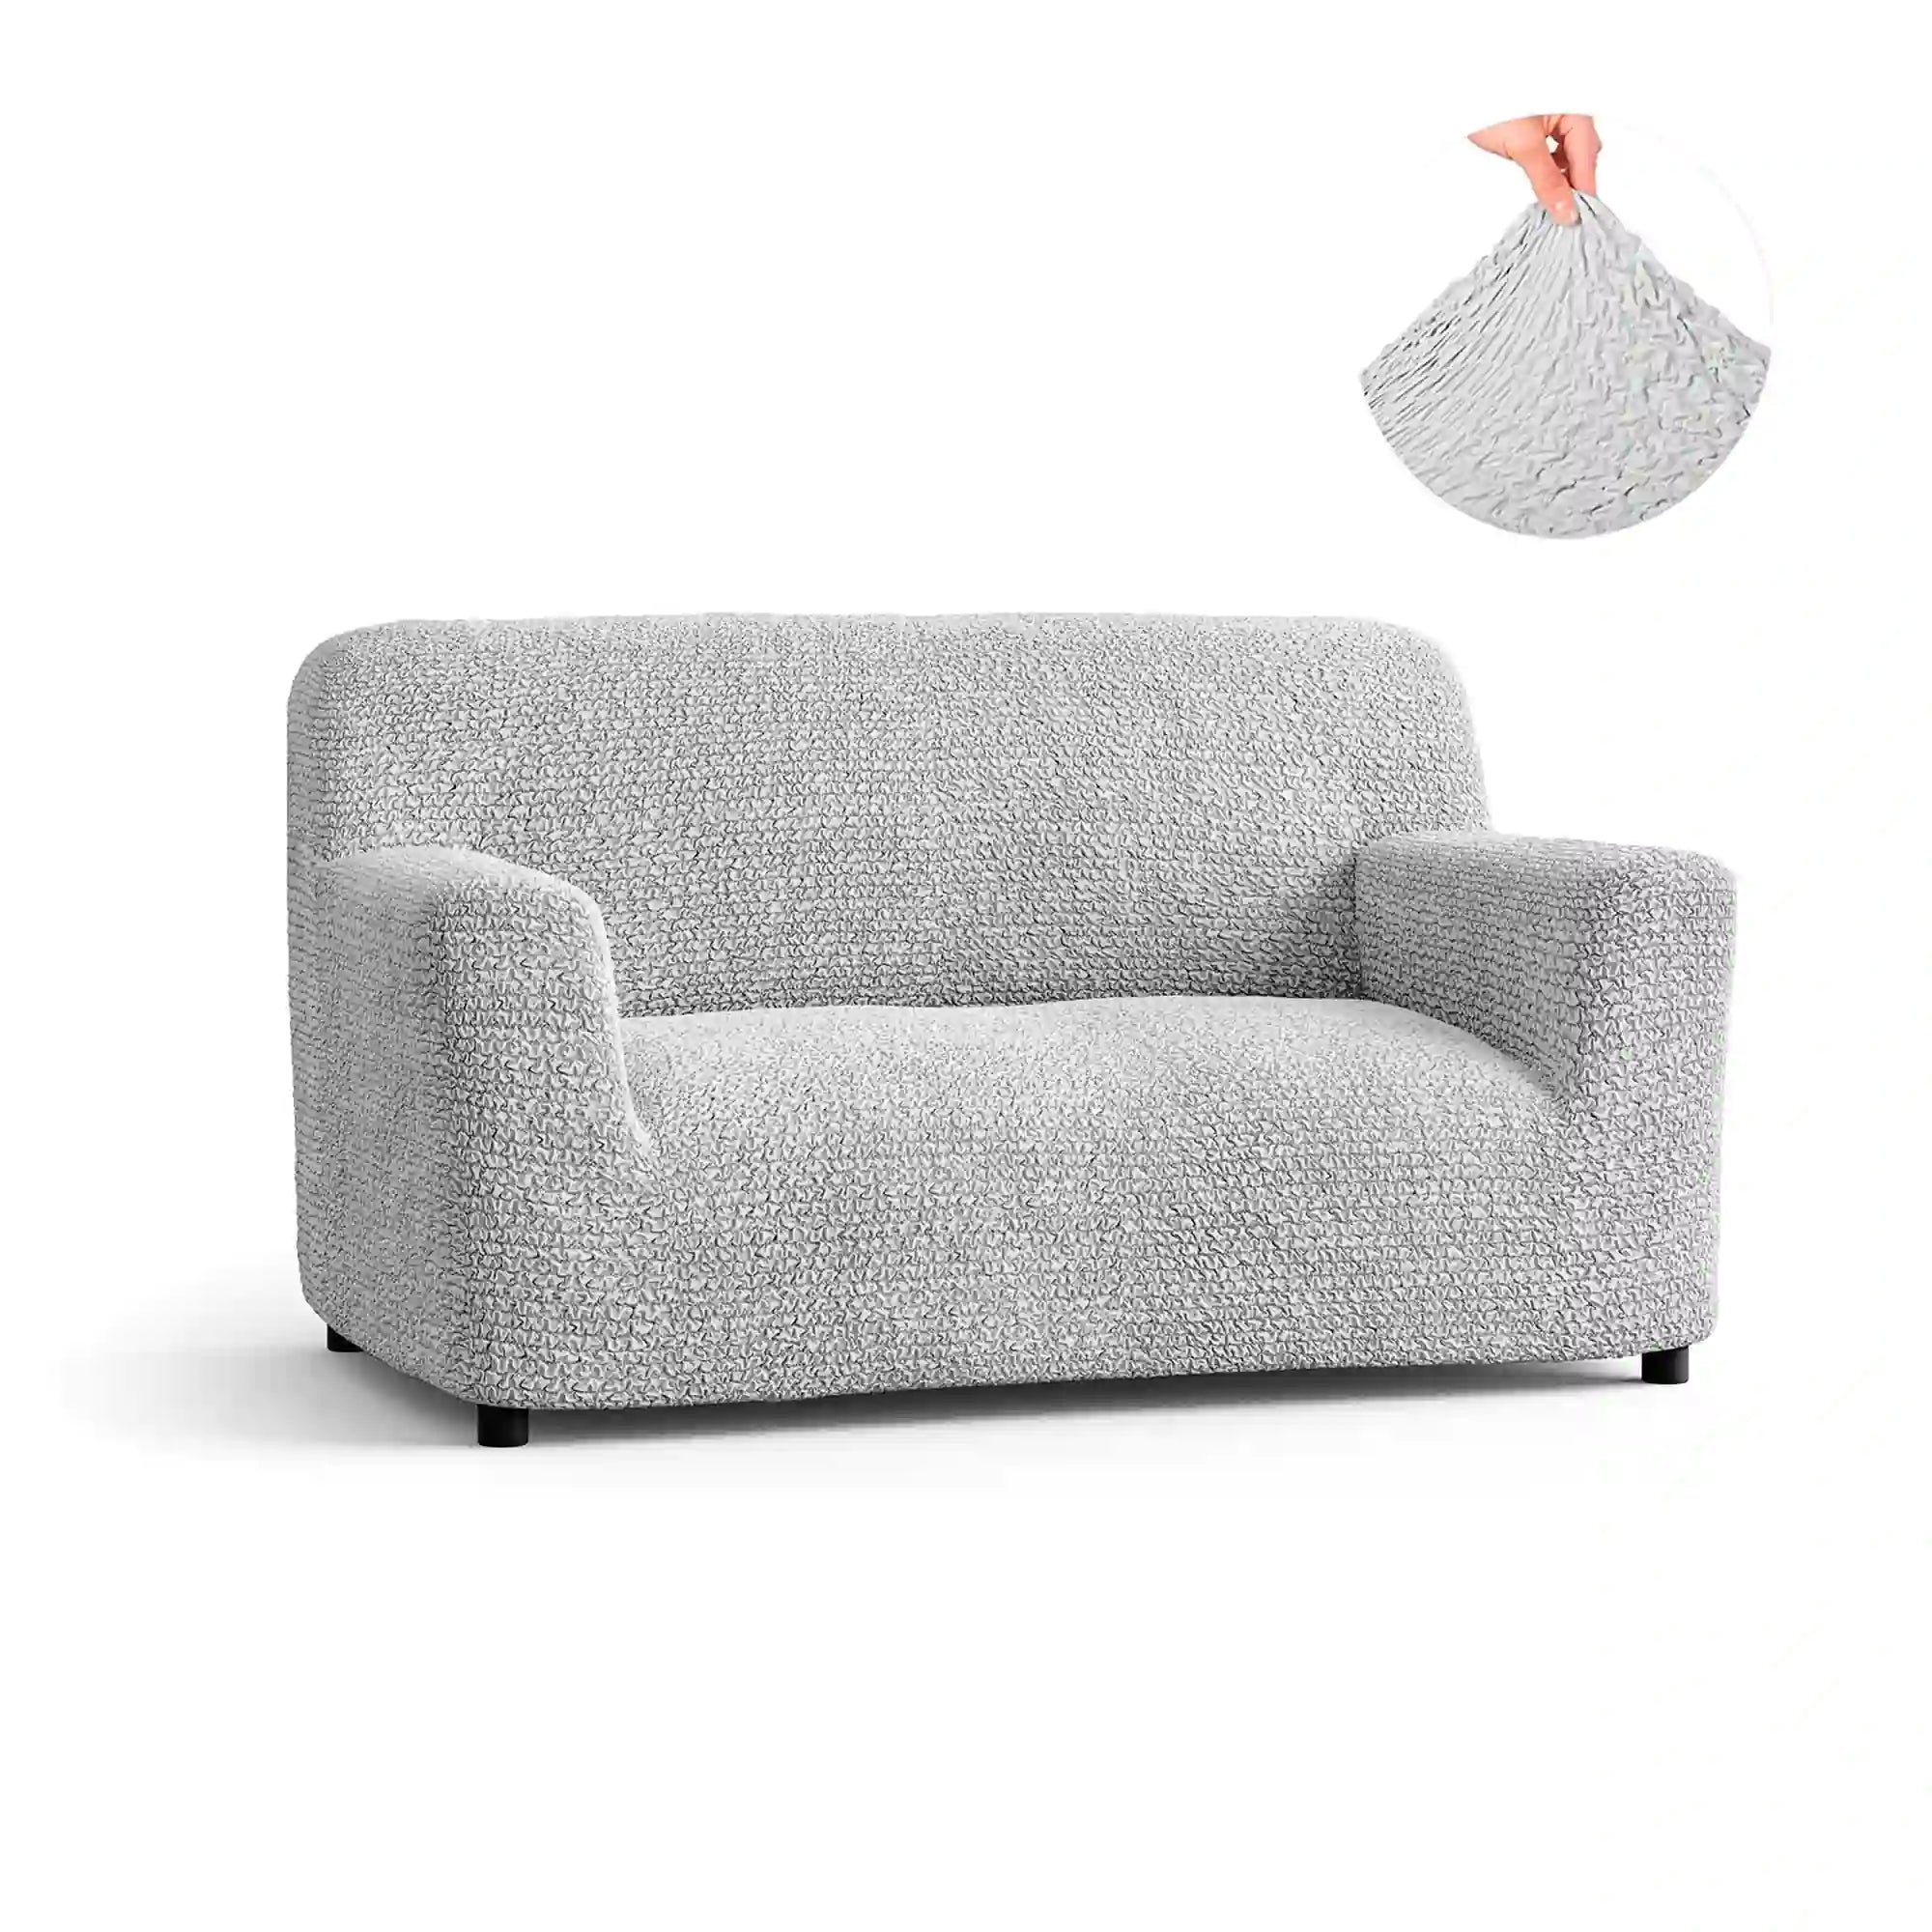 2 Seater Sofa Cover - Pearl, Microfibra